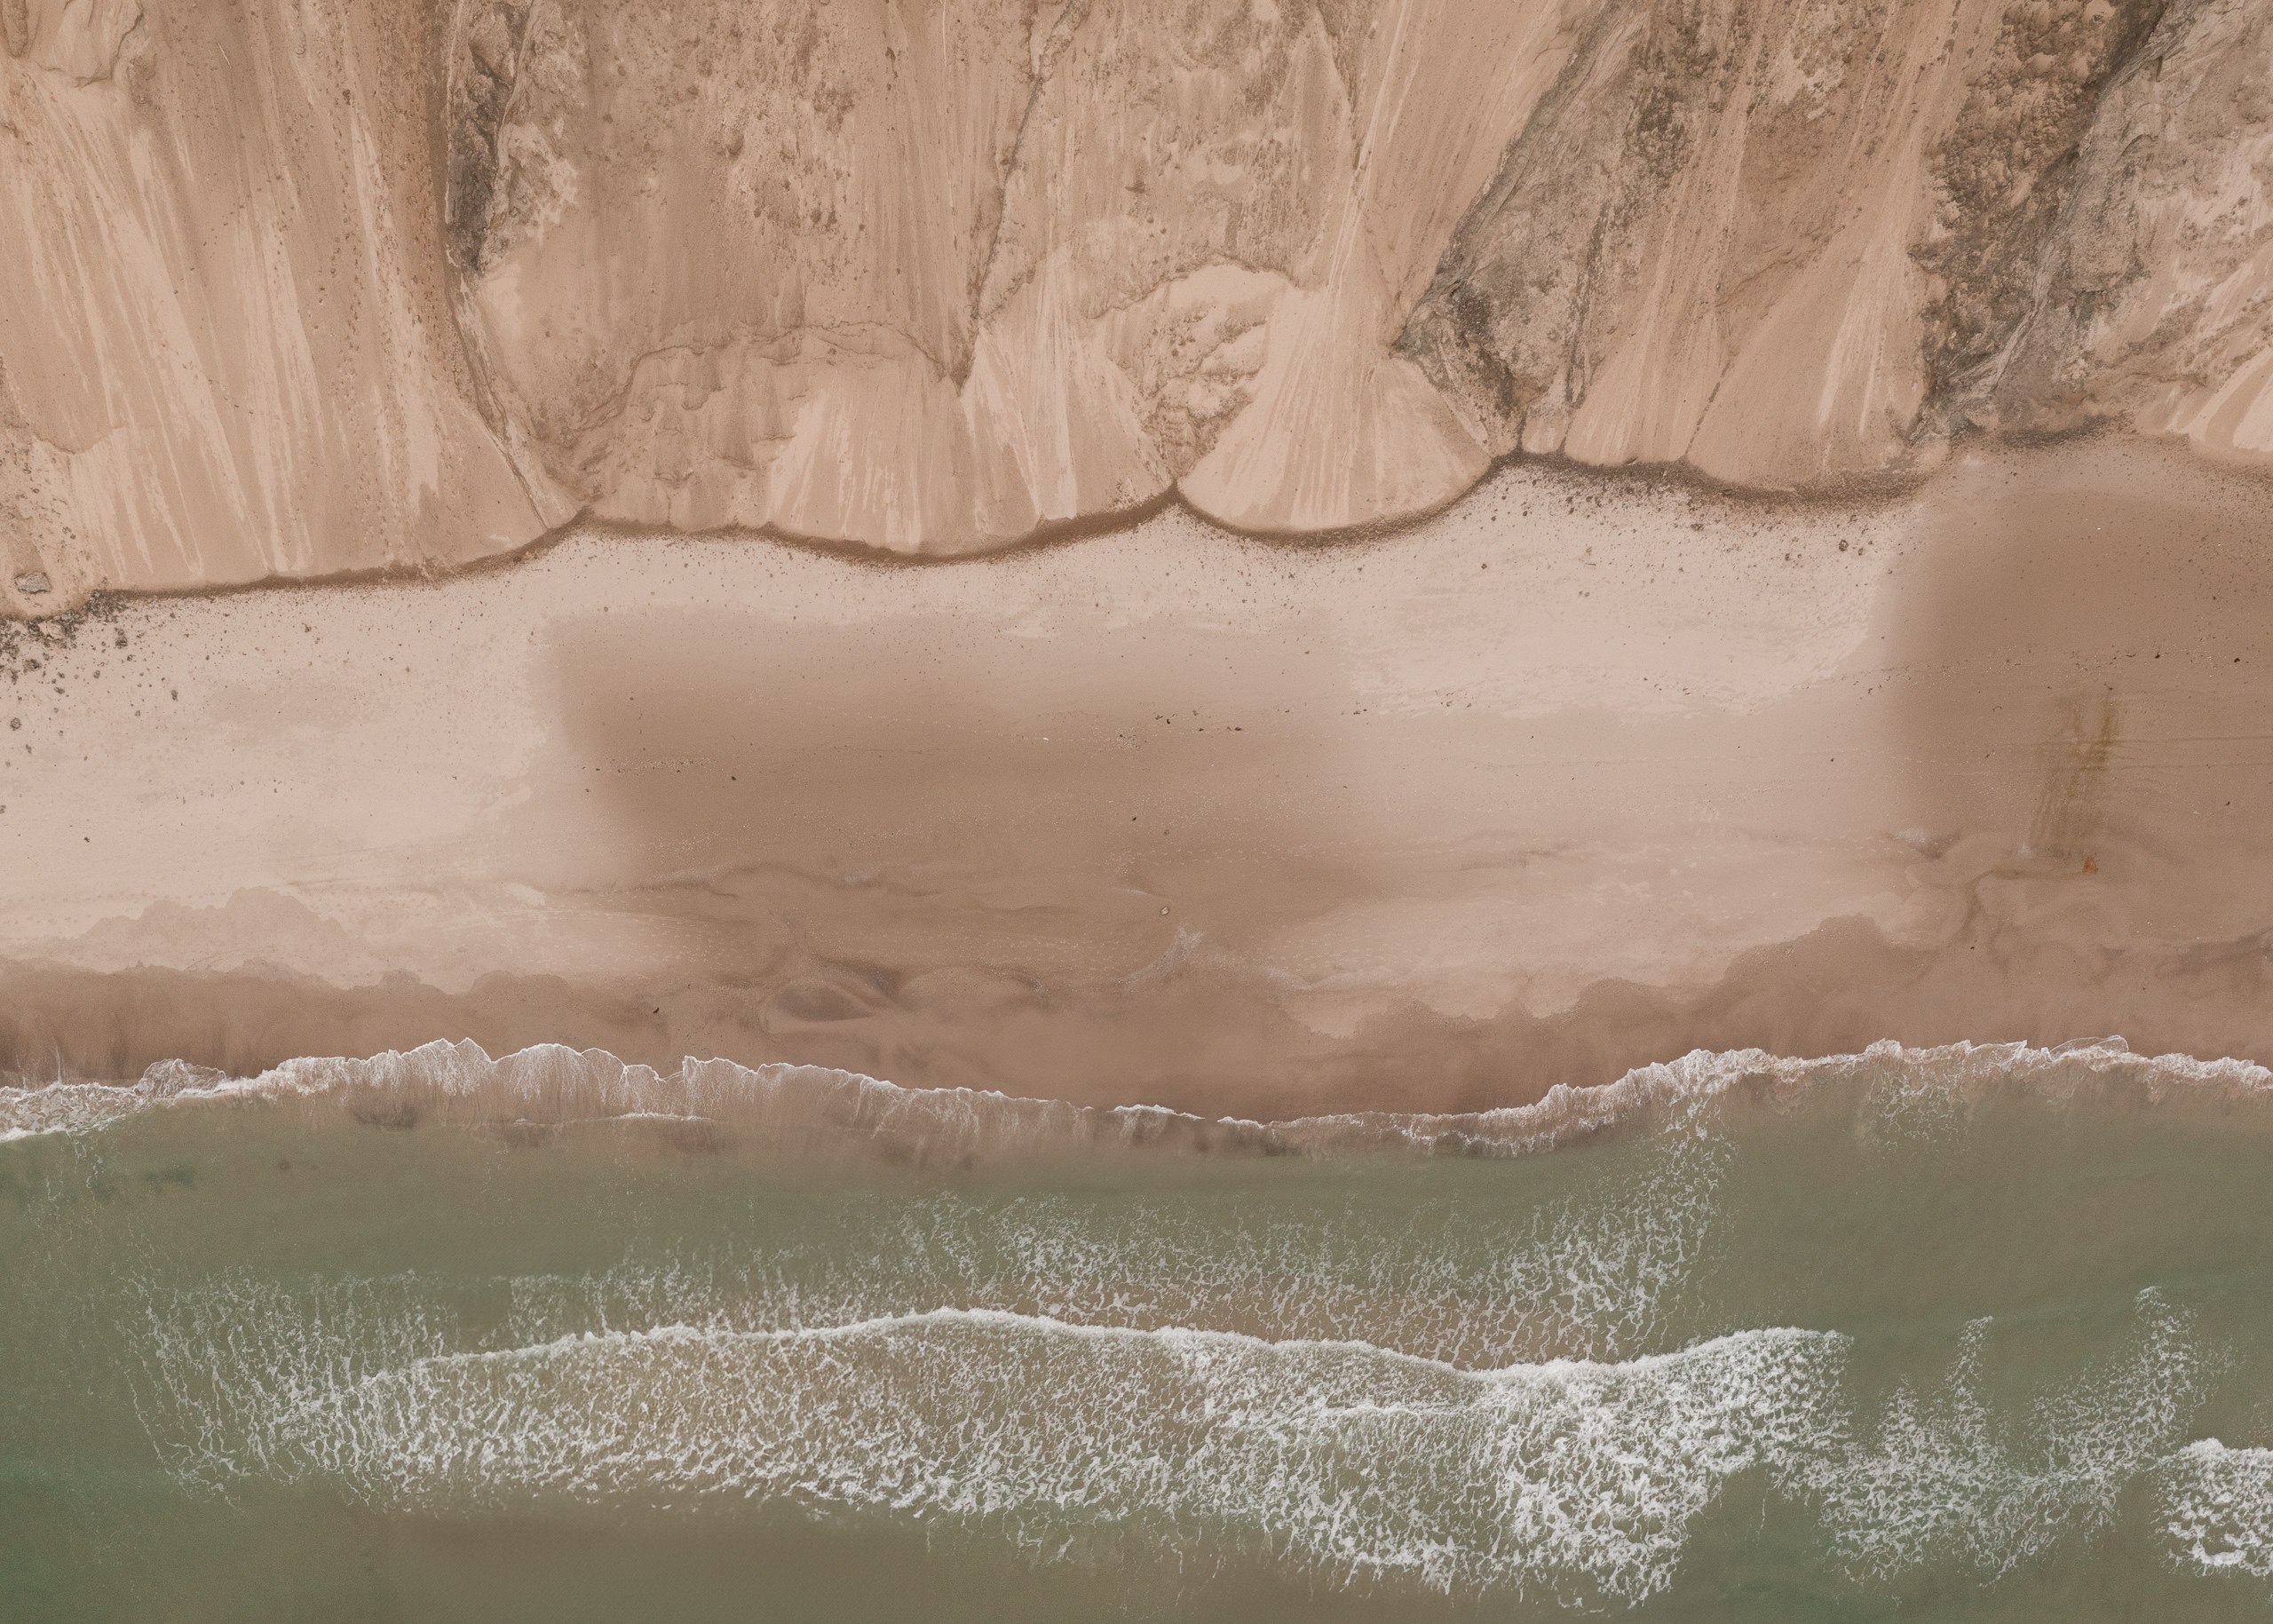 Drone fotografi af sandskrænter fra Rubjerg Knude